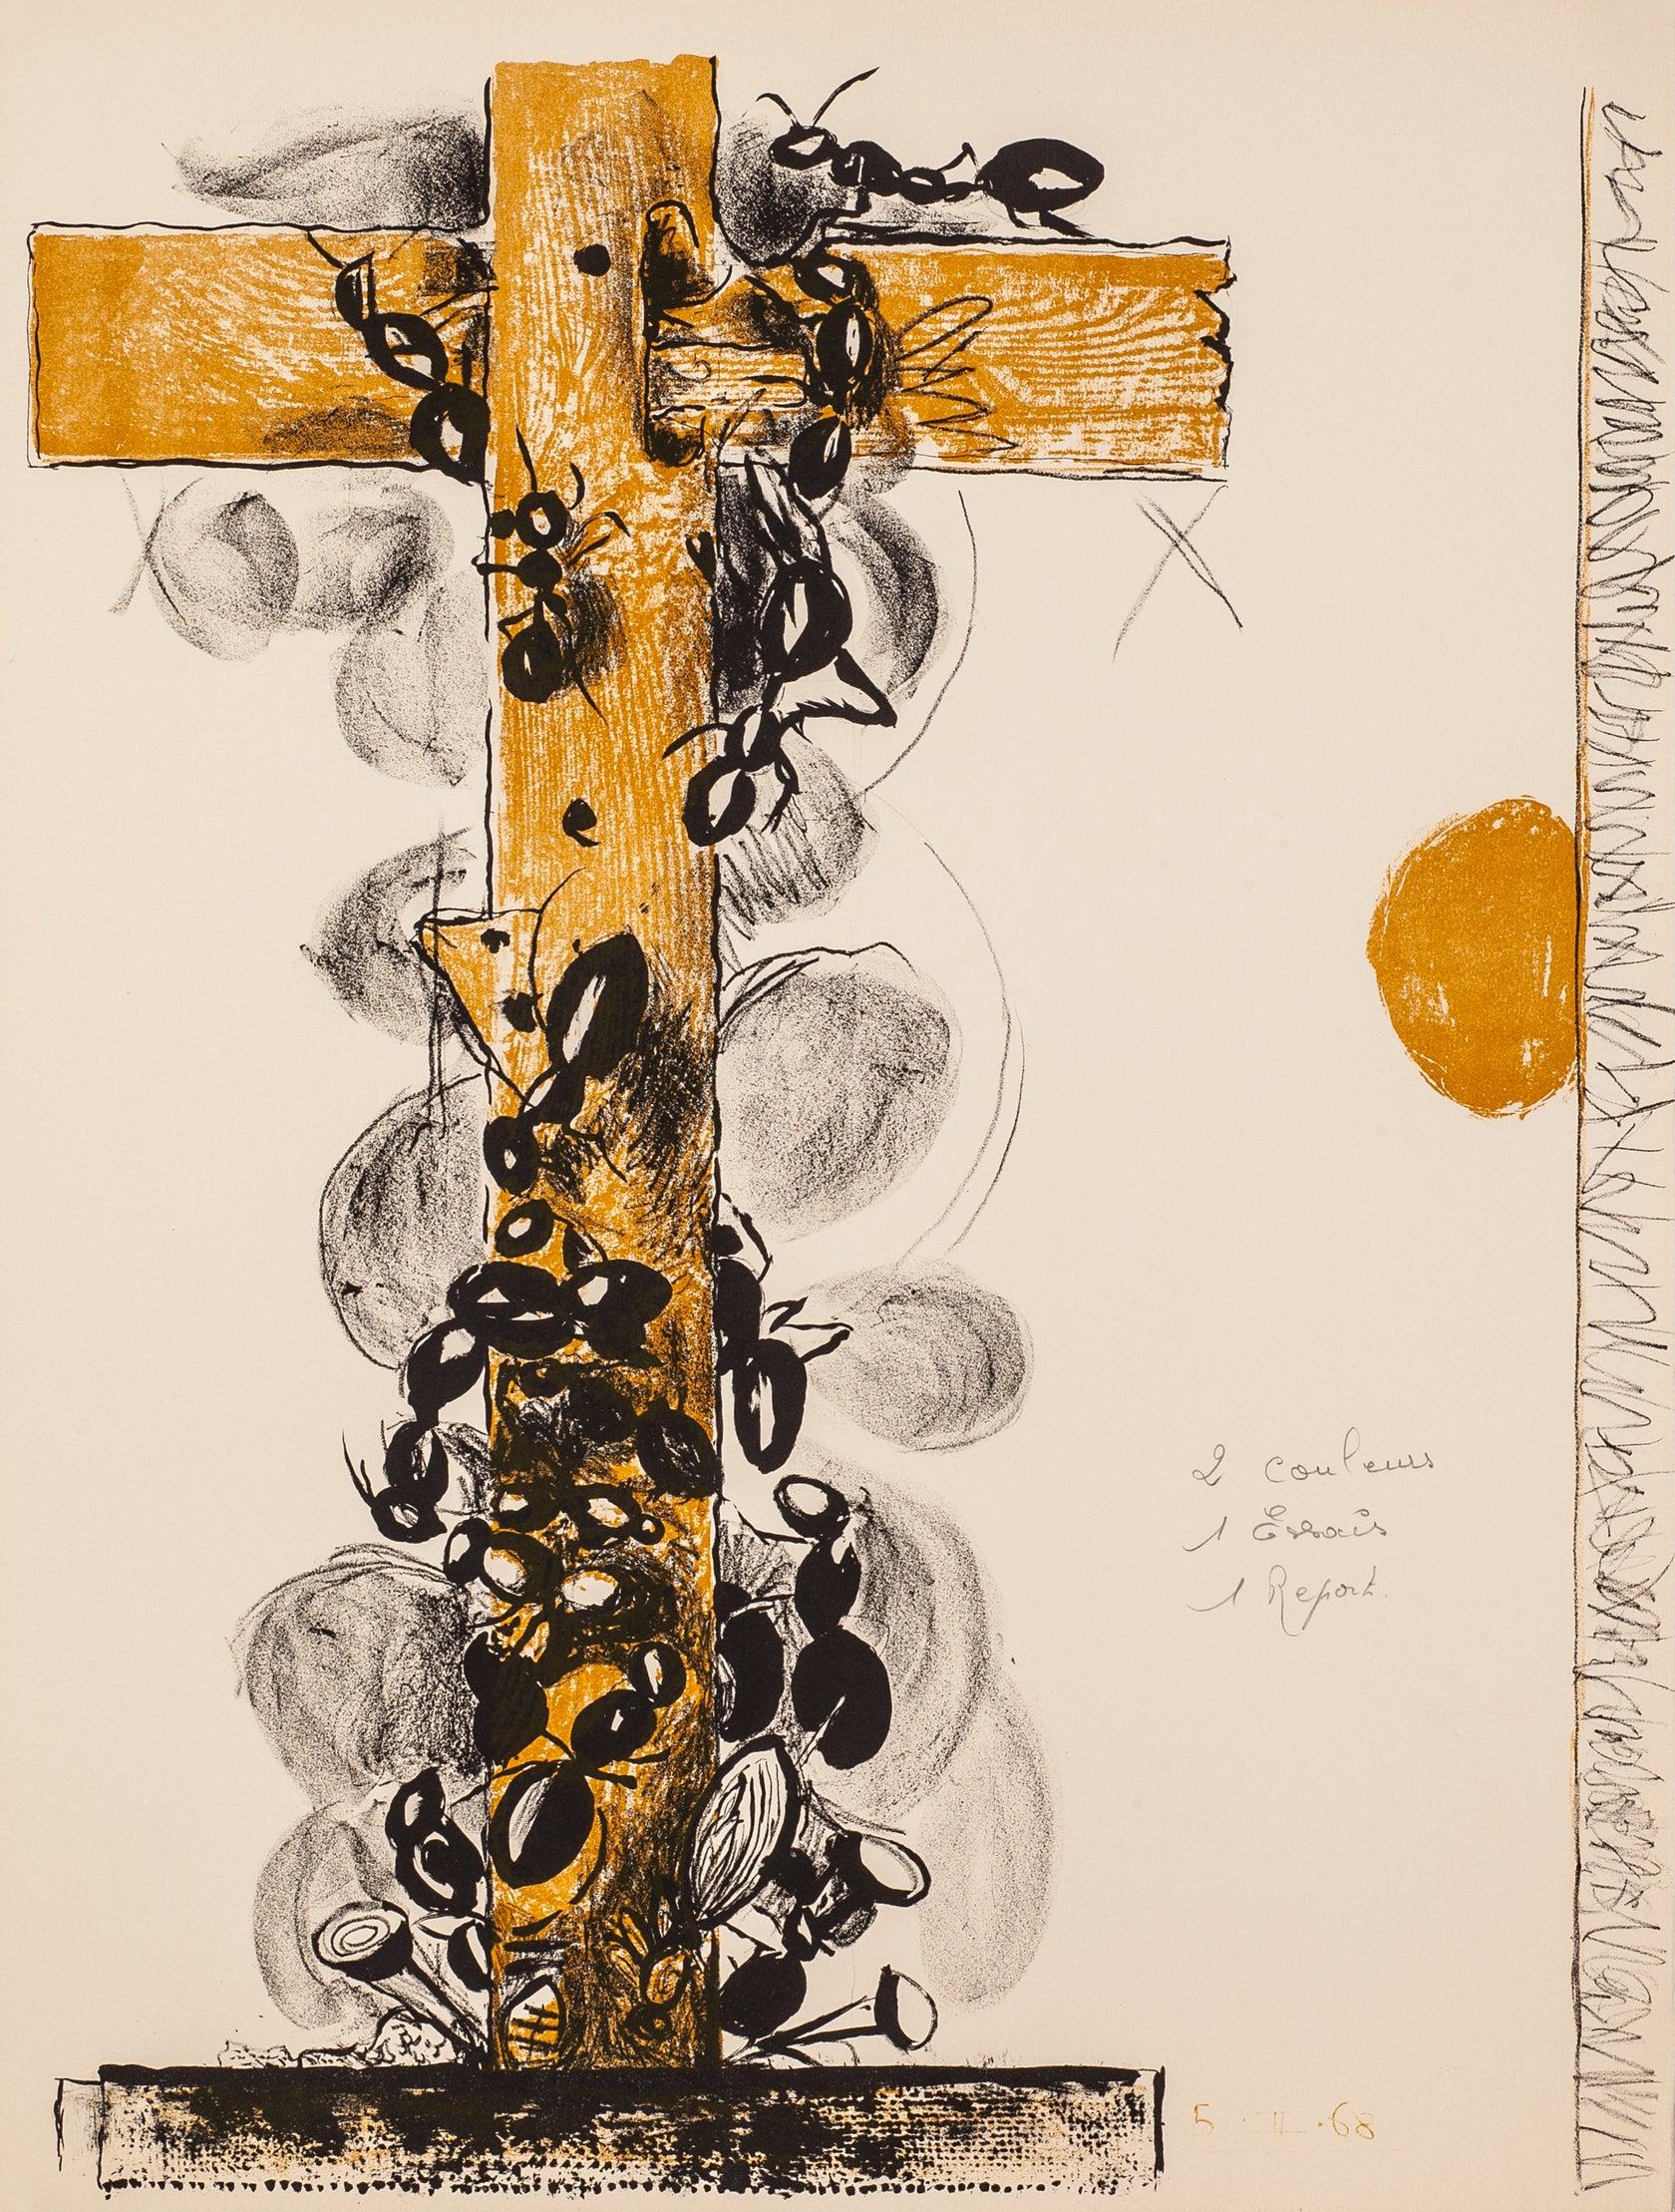 Artistes : Graham Sutherland

Médium : Lithographie originale, tirée du portfolio Un bestiaire et quelques correspondances, 1968

Dimensions : 26 x 20 in, 66 x 50.8 cm